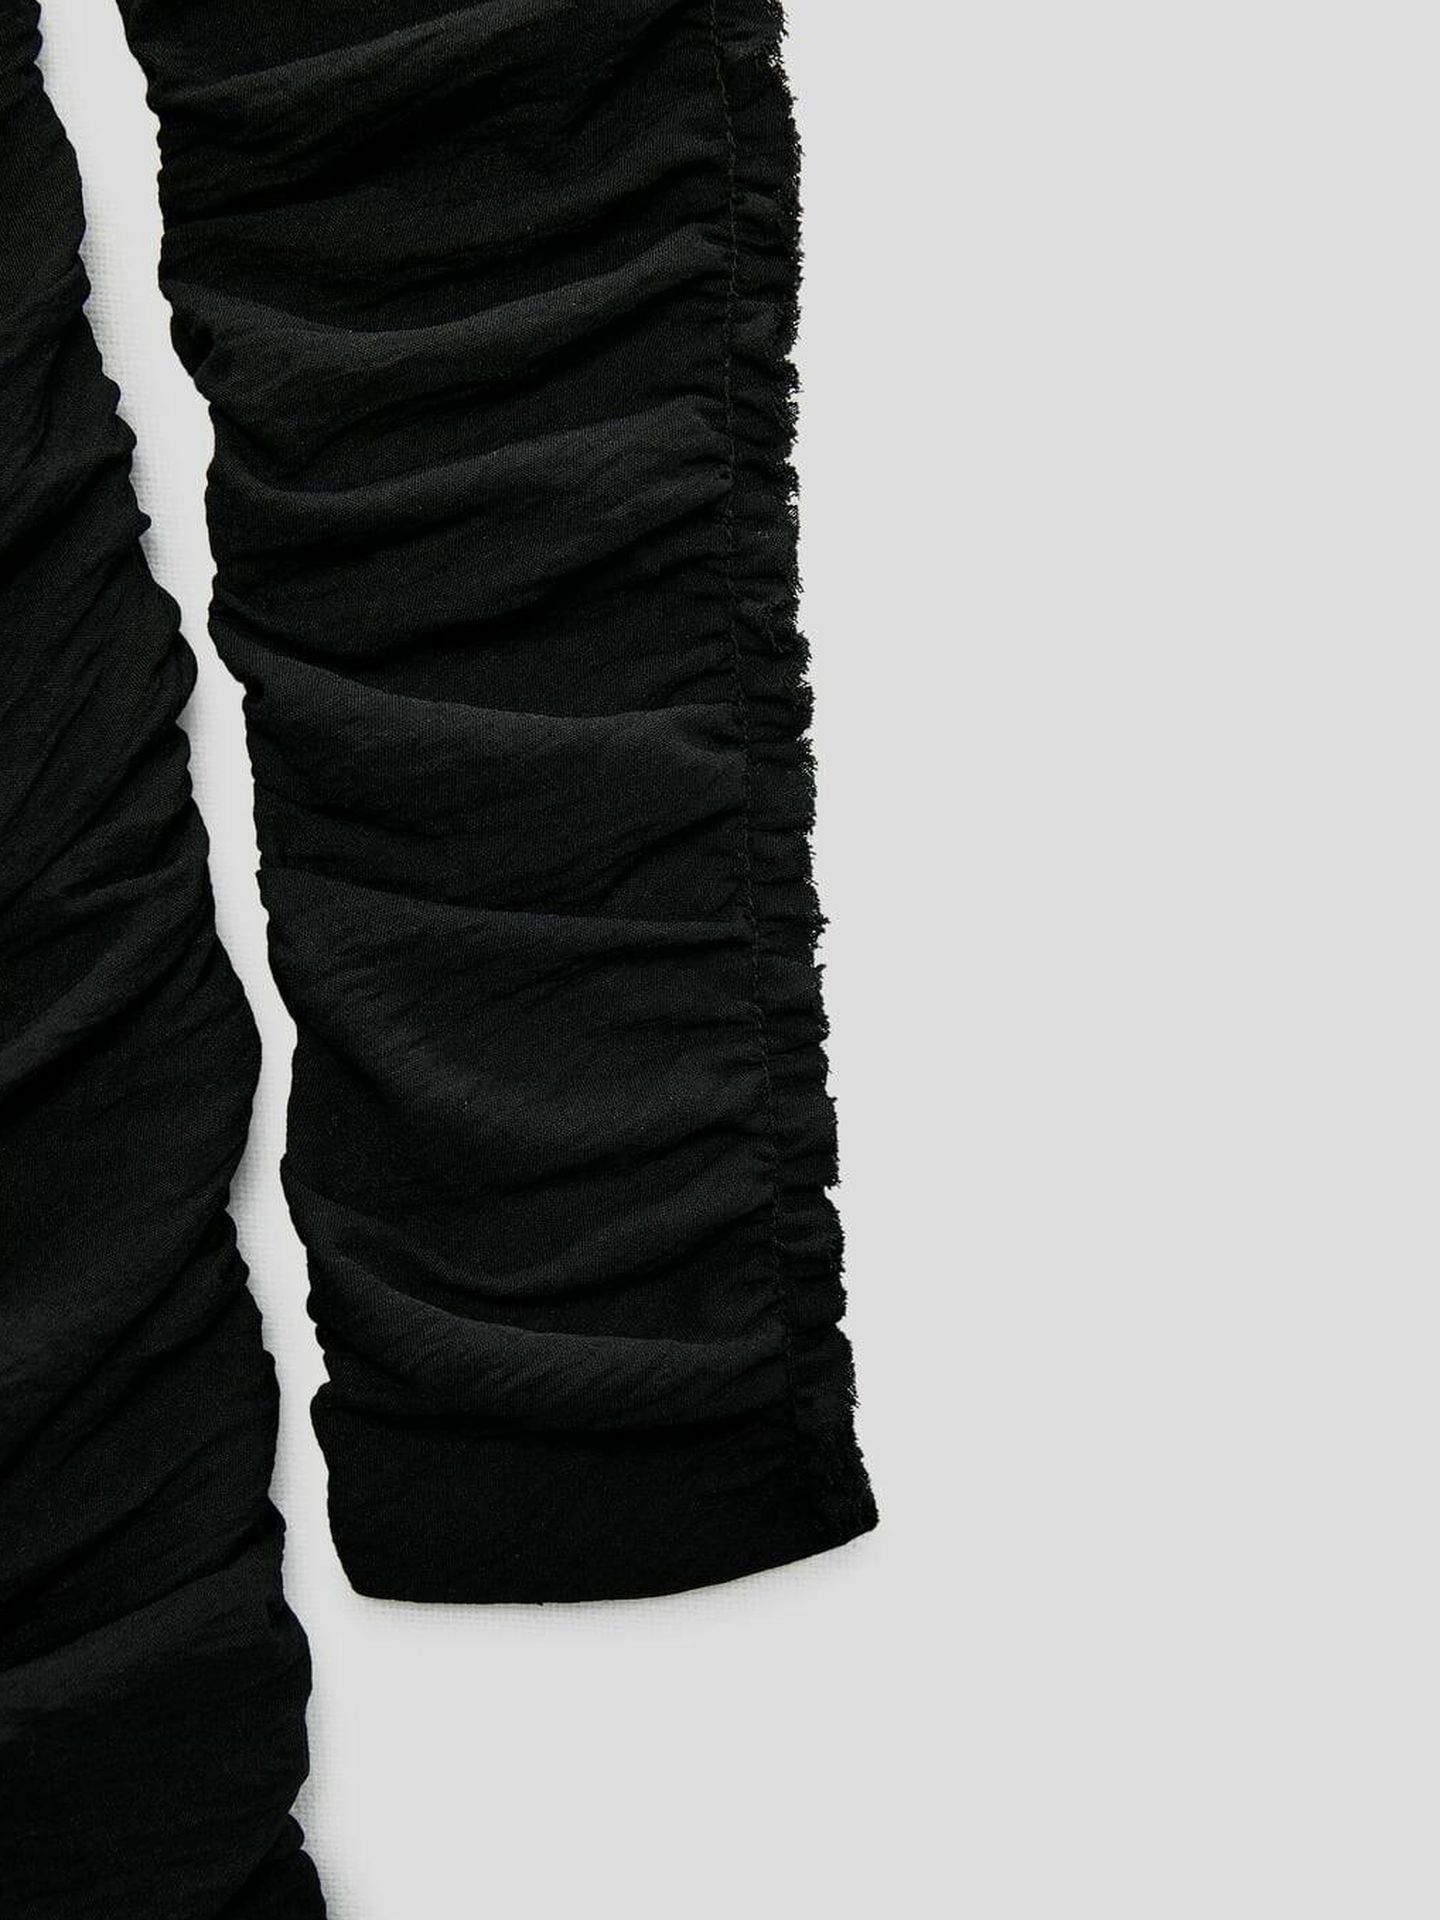 Vestido negro de edición limitada. (Zara/Cortesía)